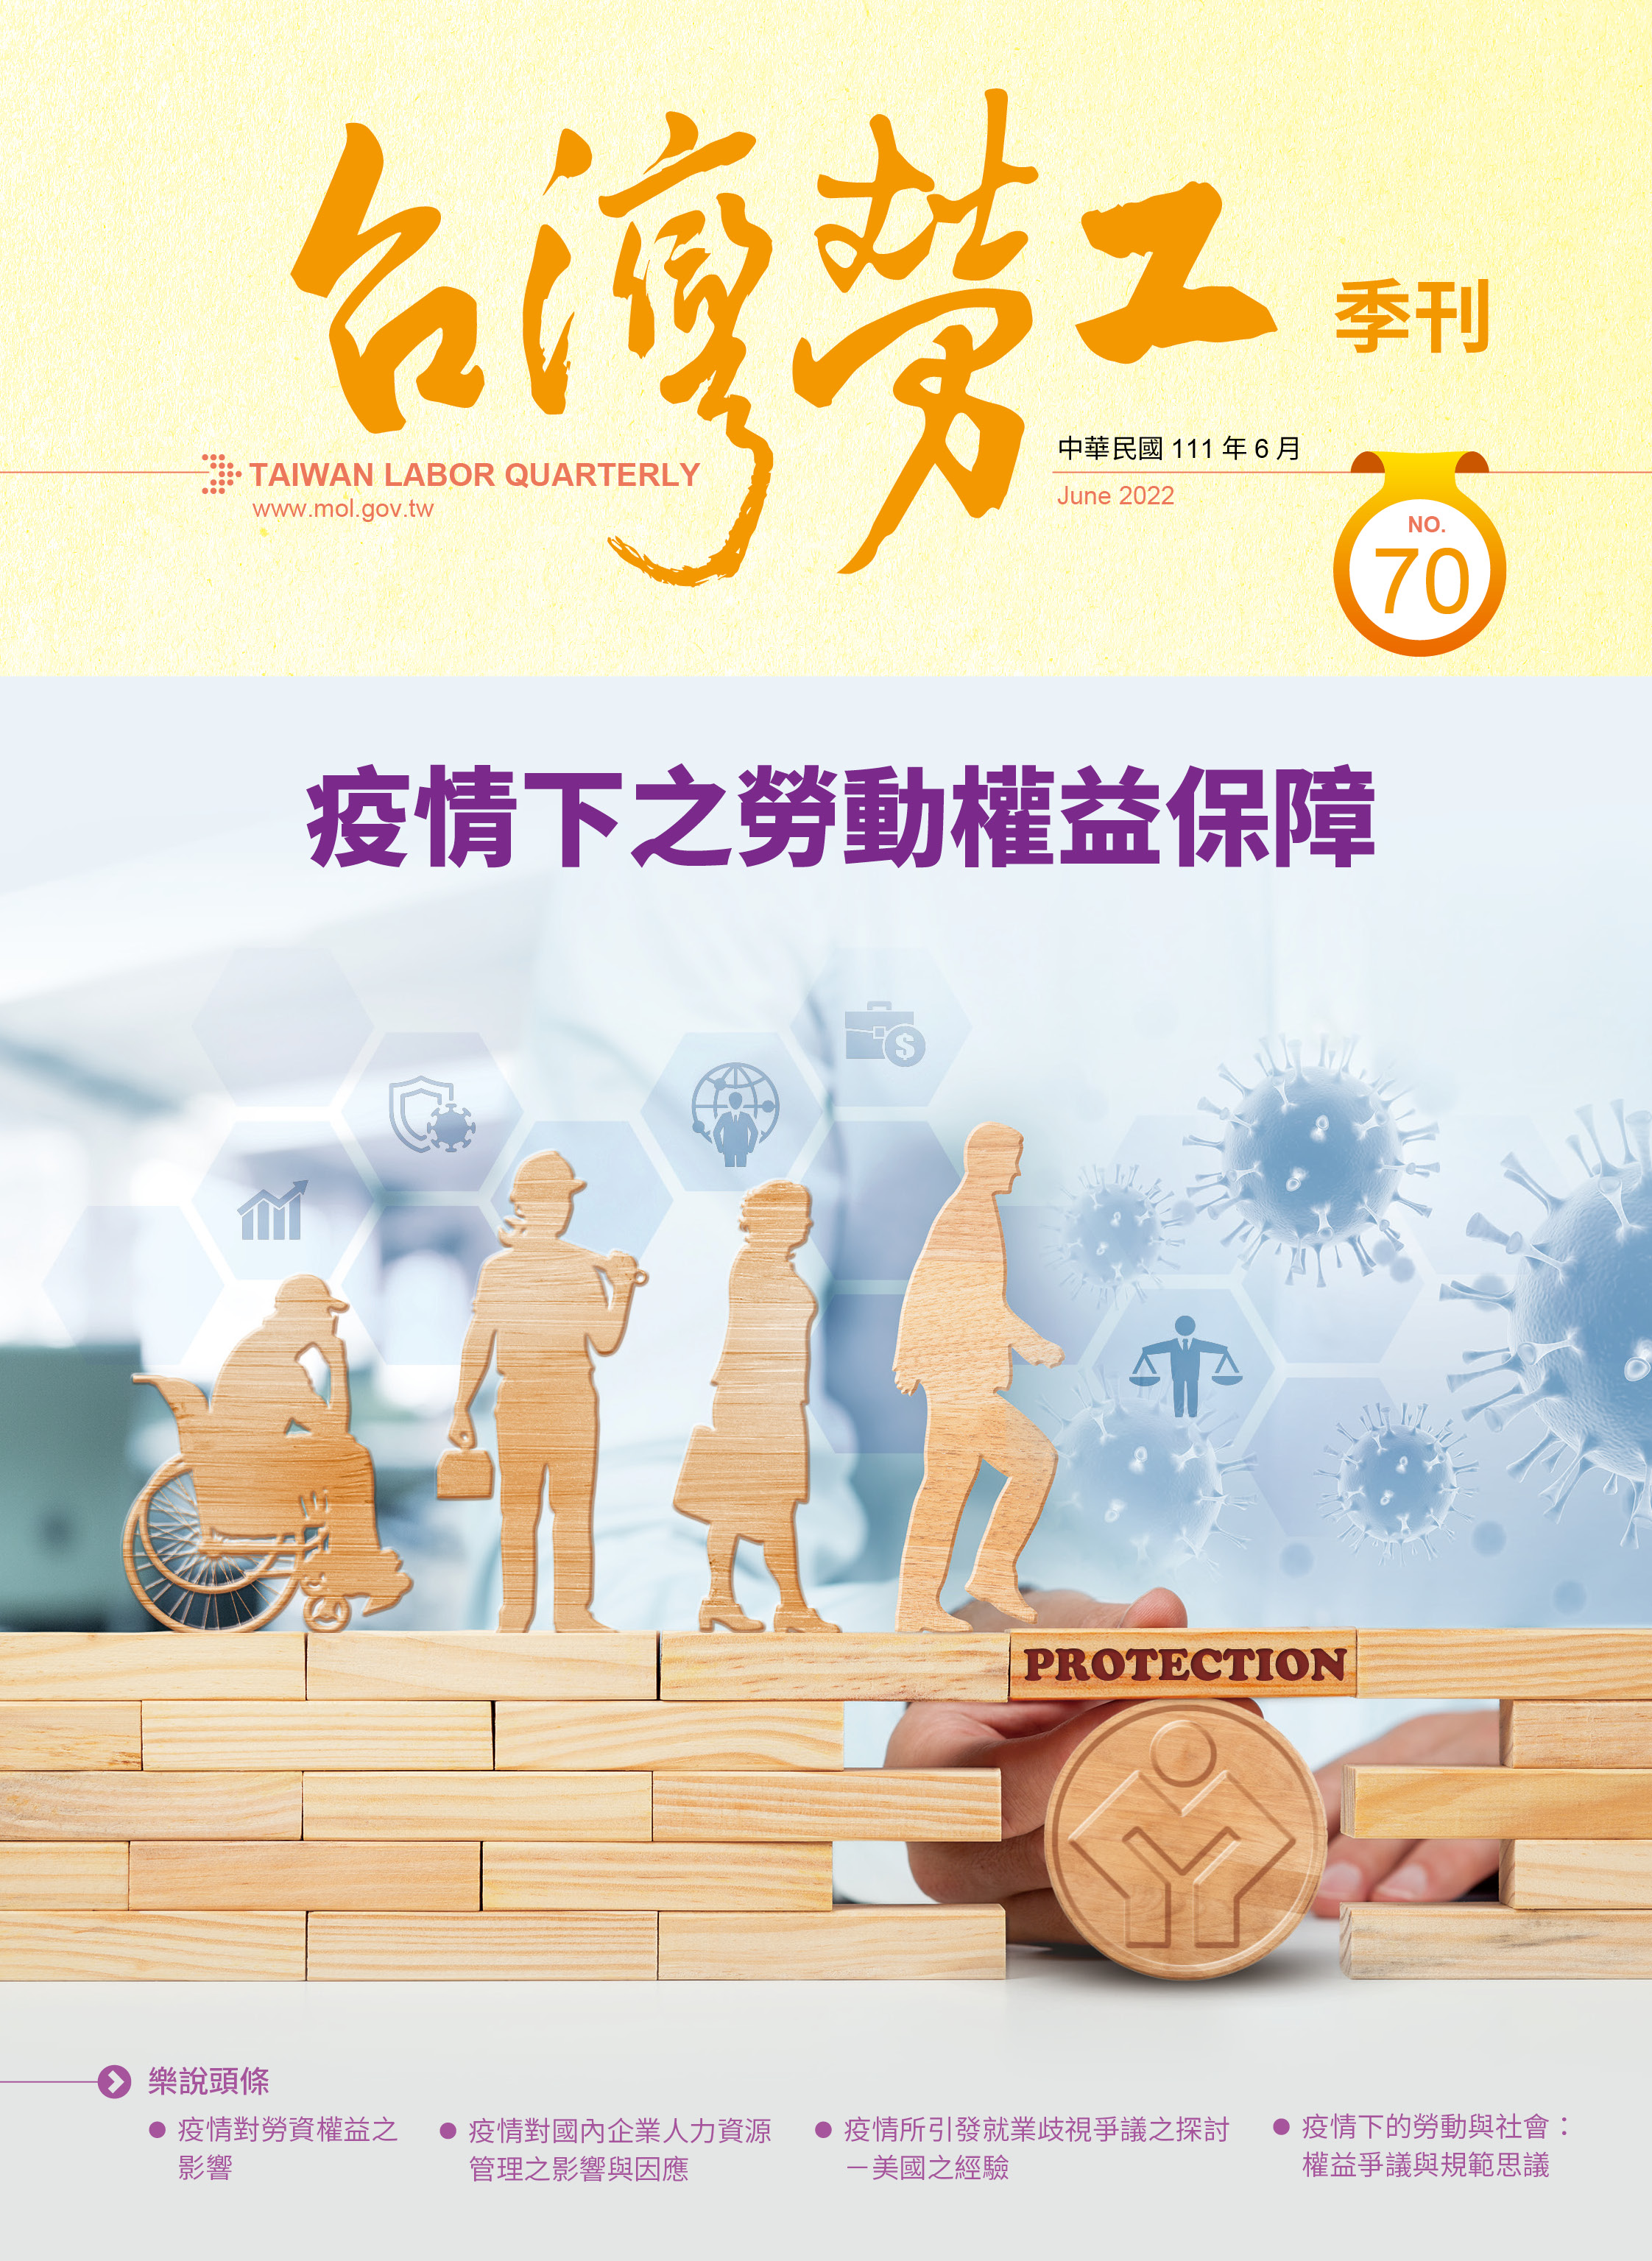 第70期-台灣勞工季刊 展示圖